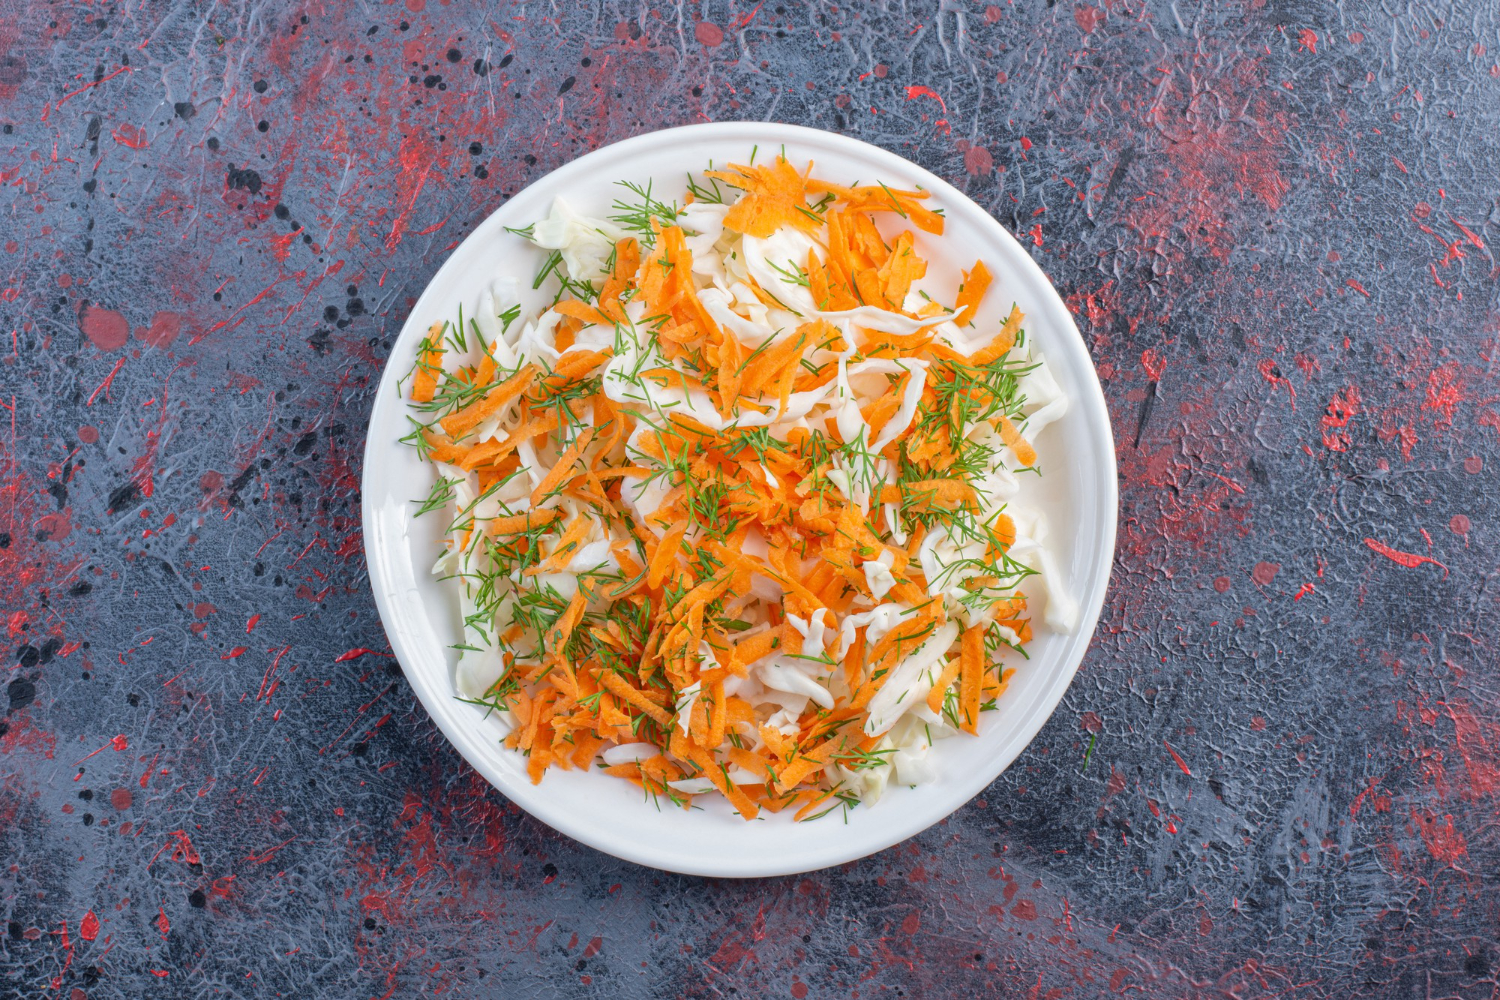 Saborosa salada de repolho e cenoura com toque agridoce